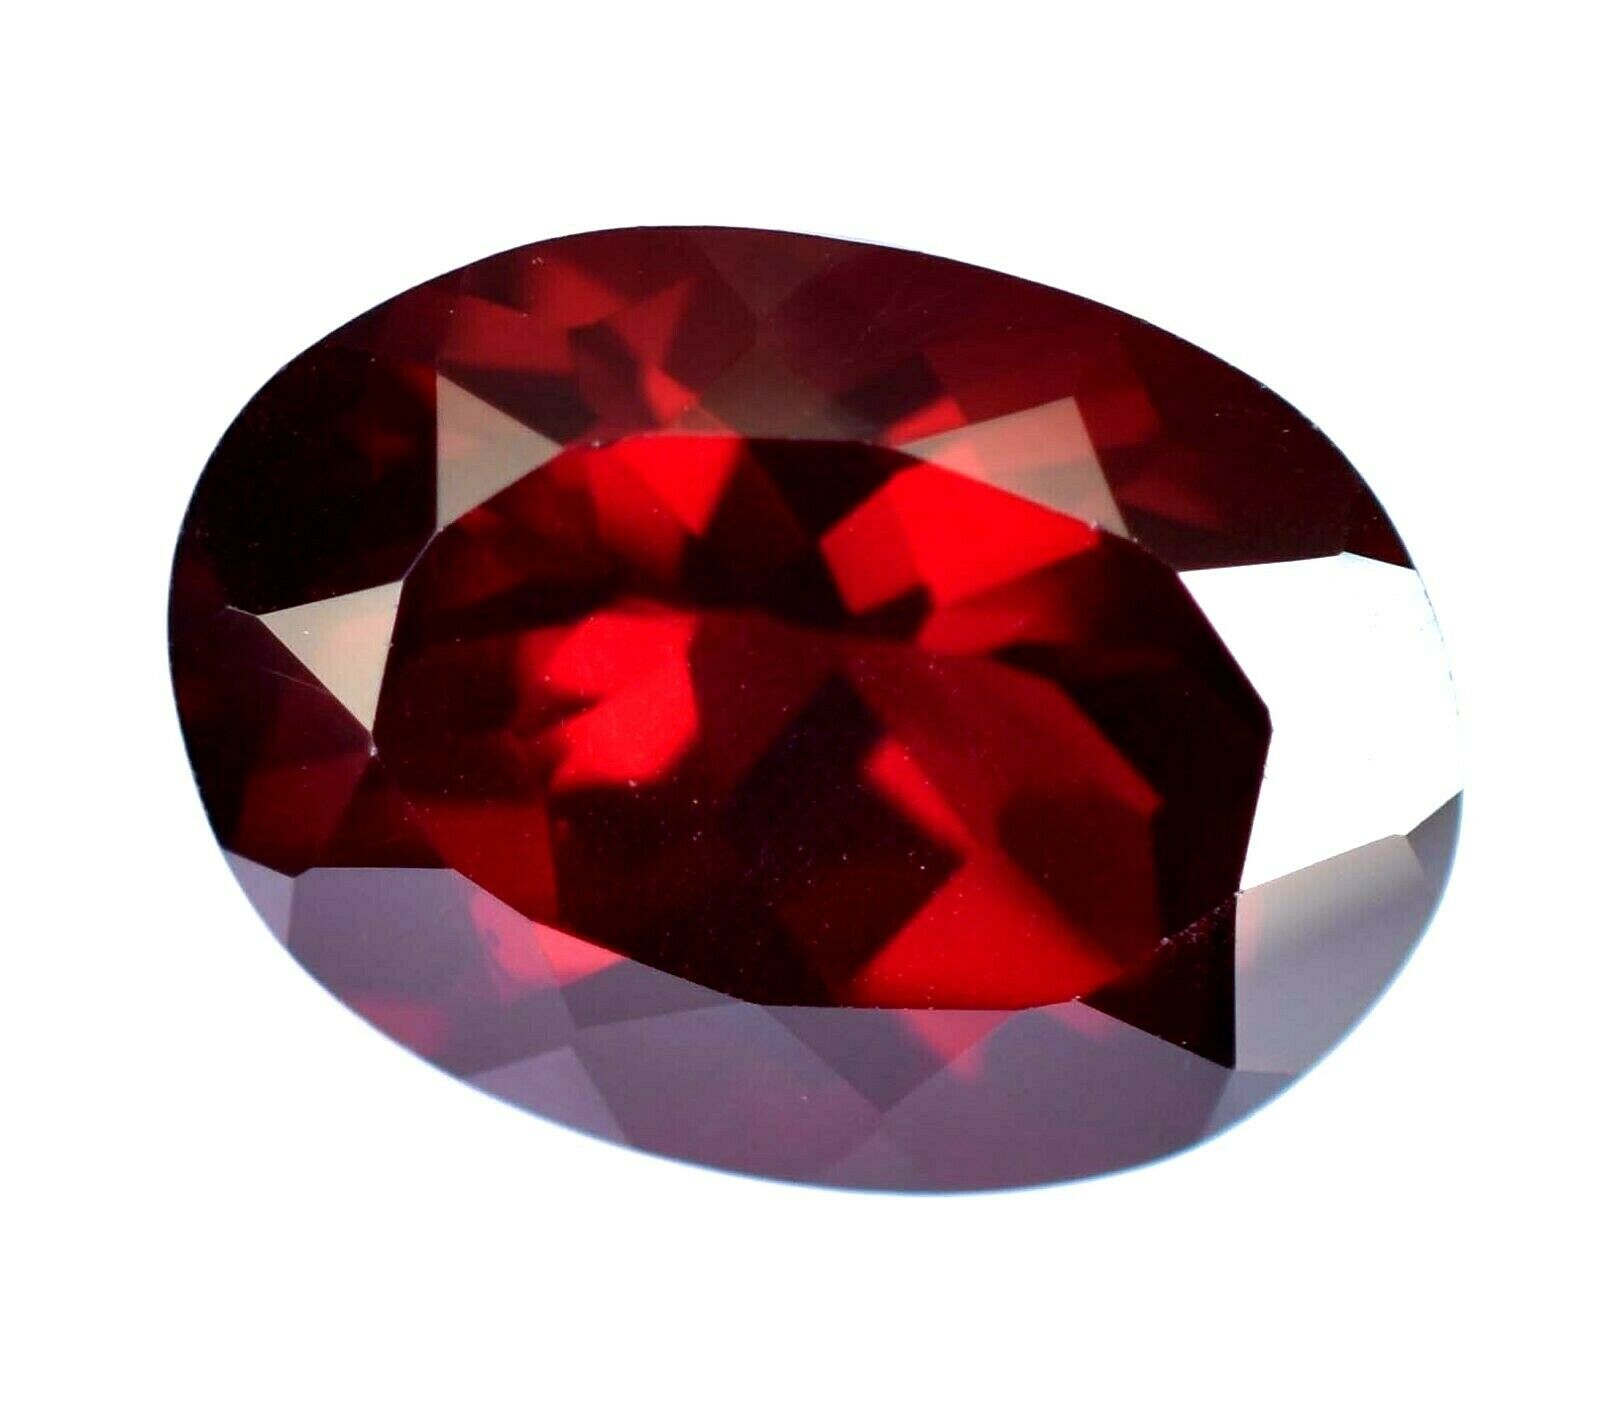 7.40 Ct Natural Red Color Almandine Garnet Oval Gemstone Agsl Certified